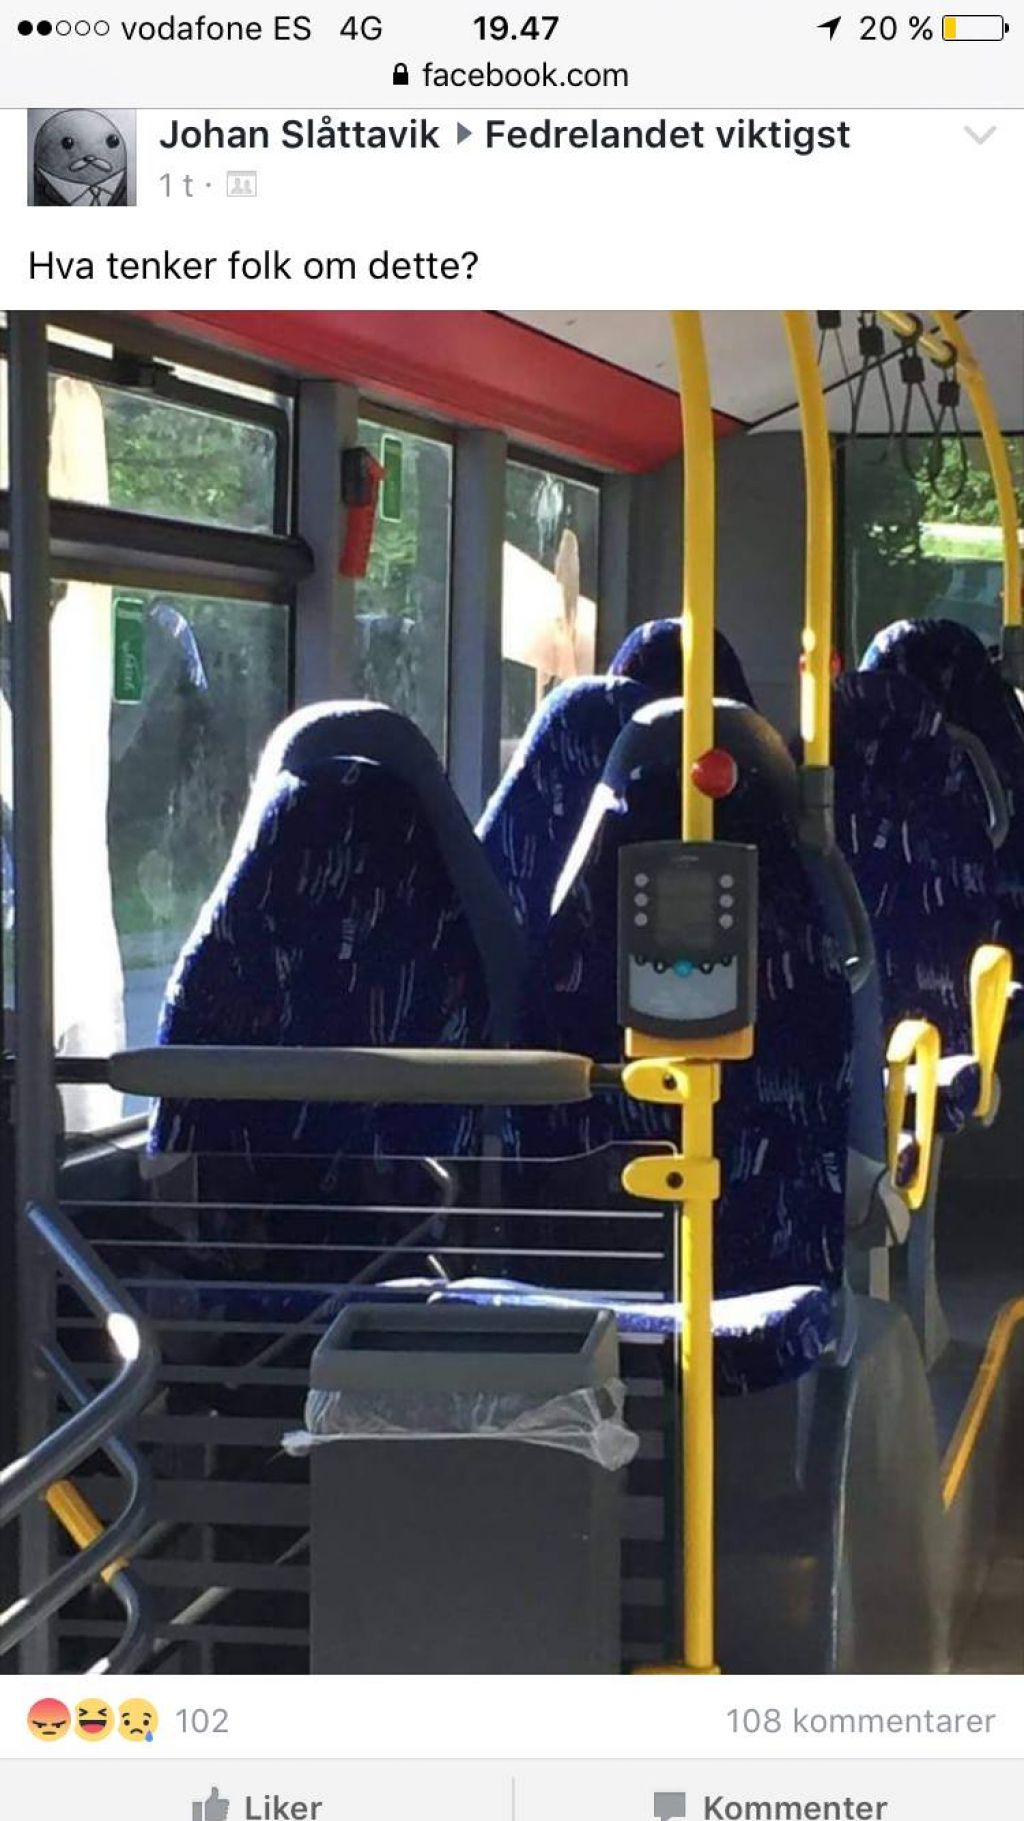 Skrajneži so se grdo pošalili: z burkami na avtobusu